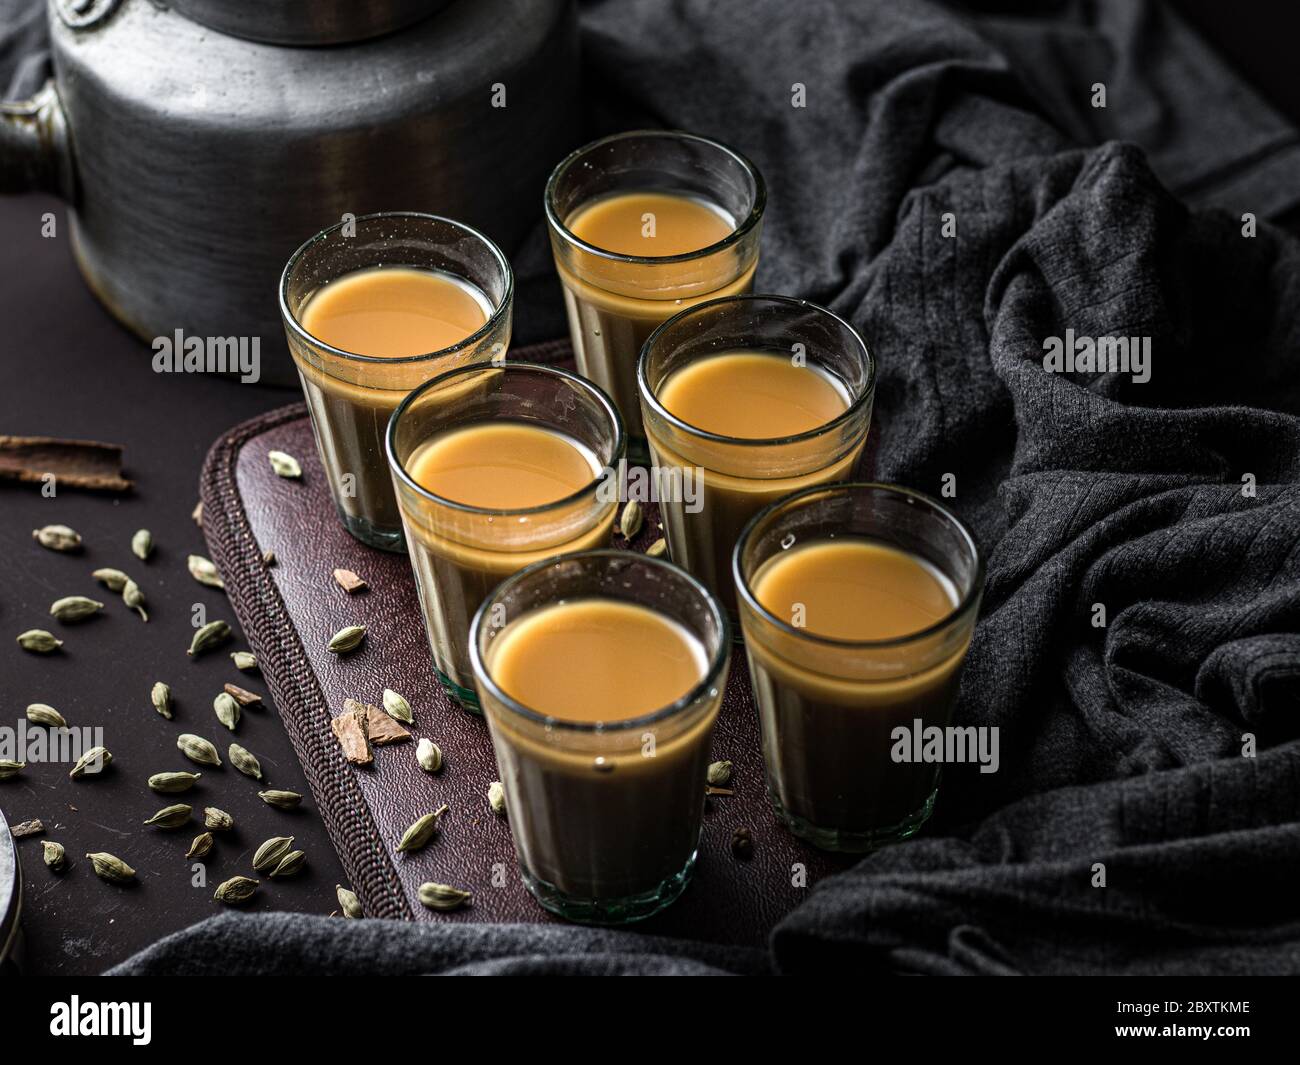 Indischer Chai in Glas Tassen mit Metall-Wasserkocher und andere Masalas,  um den Tee zu machen Stockfotografie - Alamy